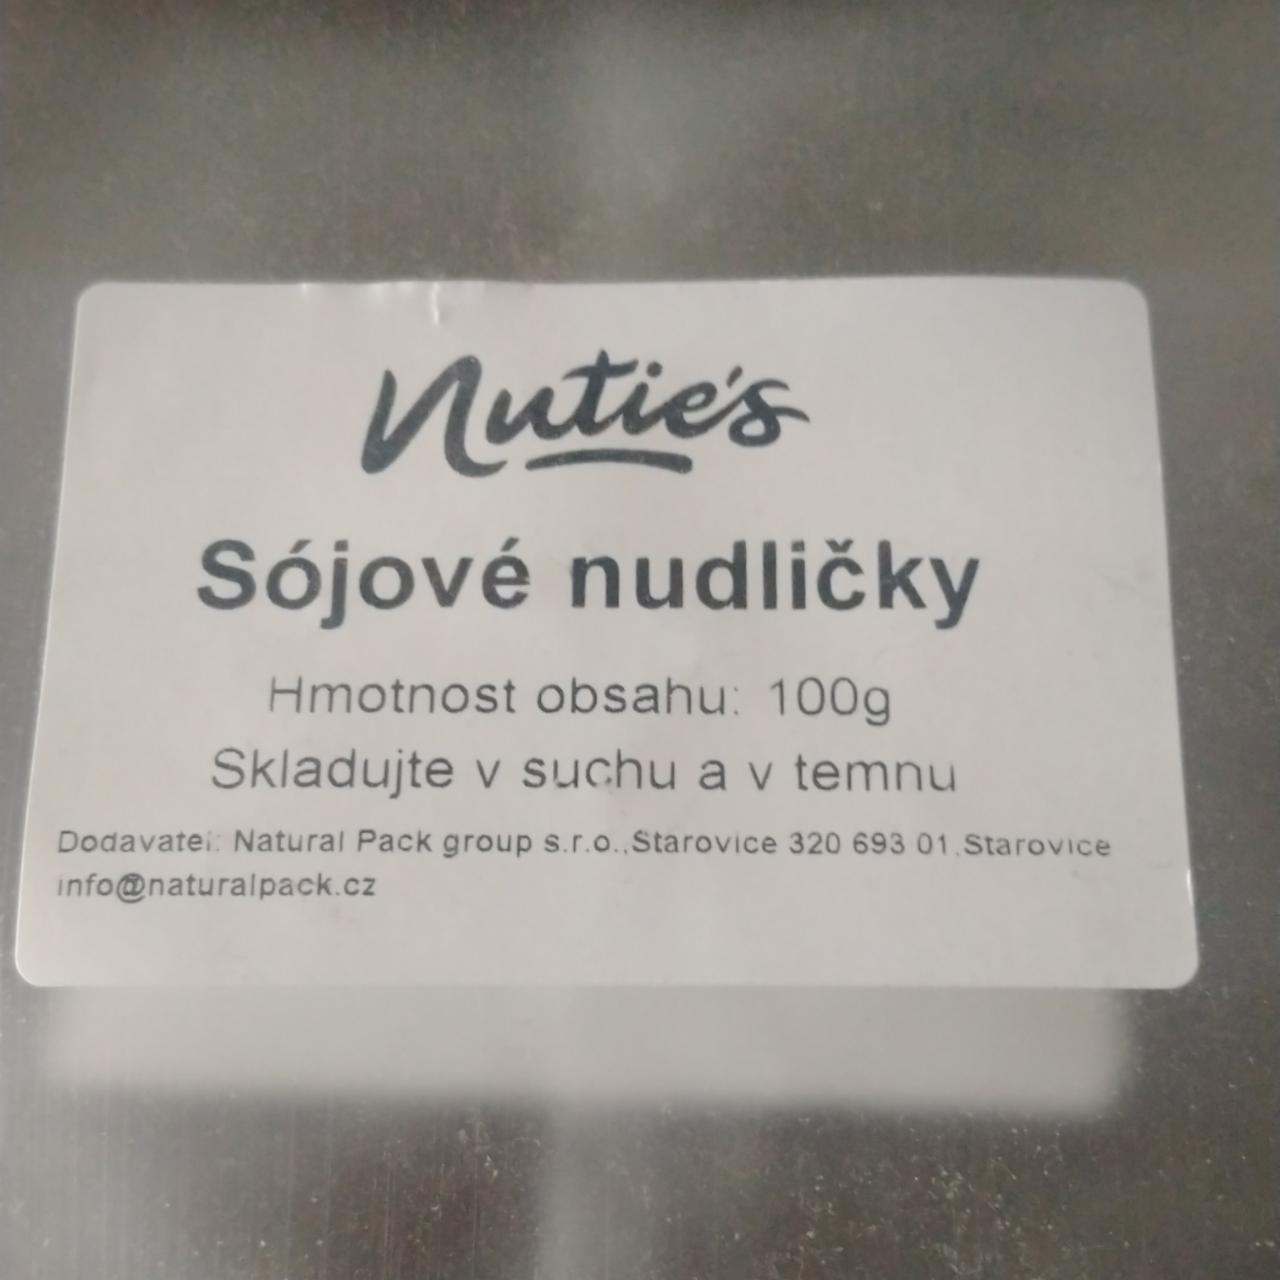 Fotografie - Sójové nudličky Nutie's